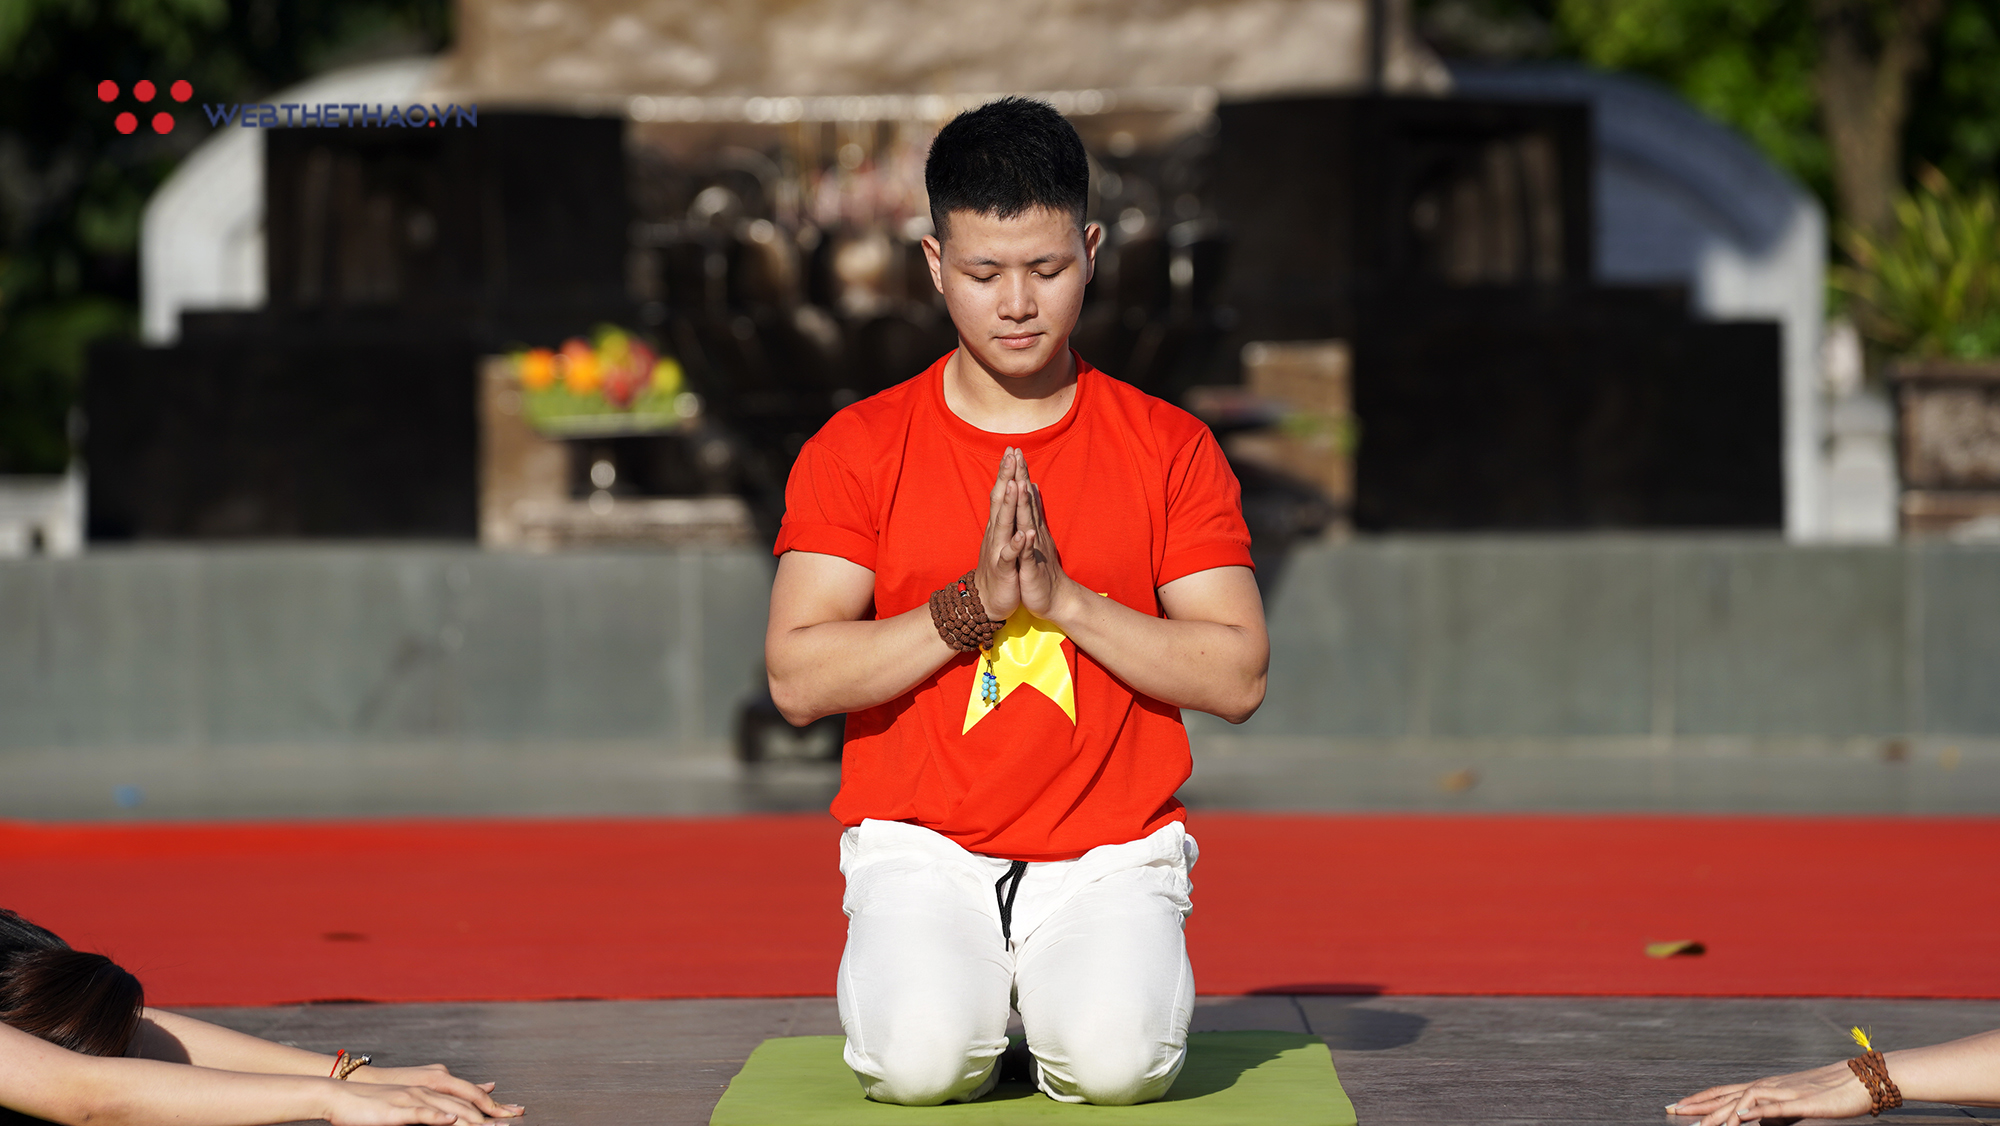 Yogi Hà Nội tưng bừng chào mừng Ngày Quốc tế Yoga 2019